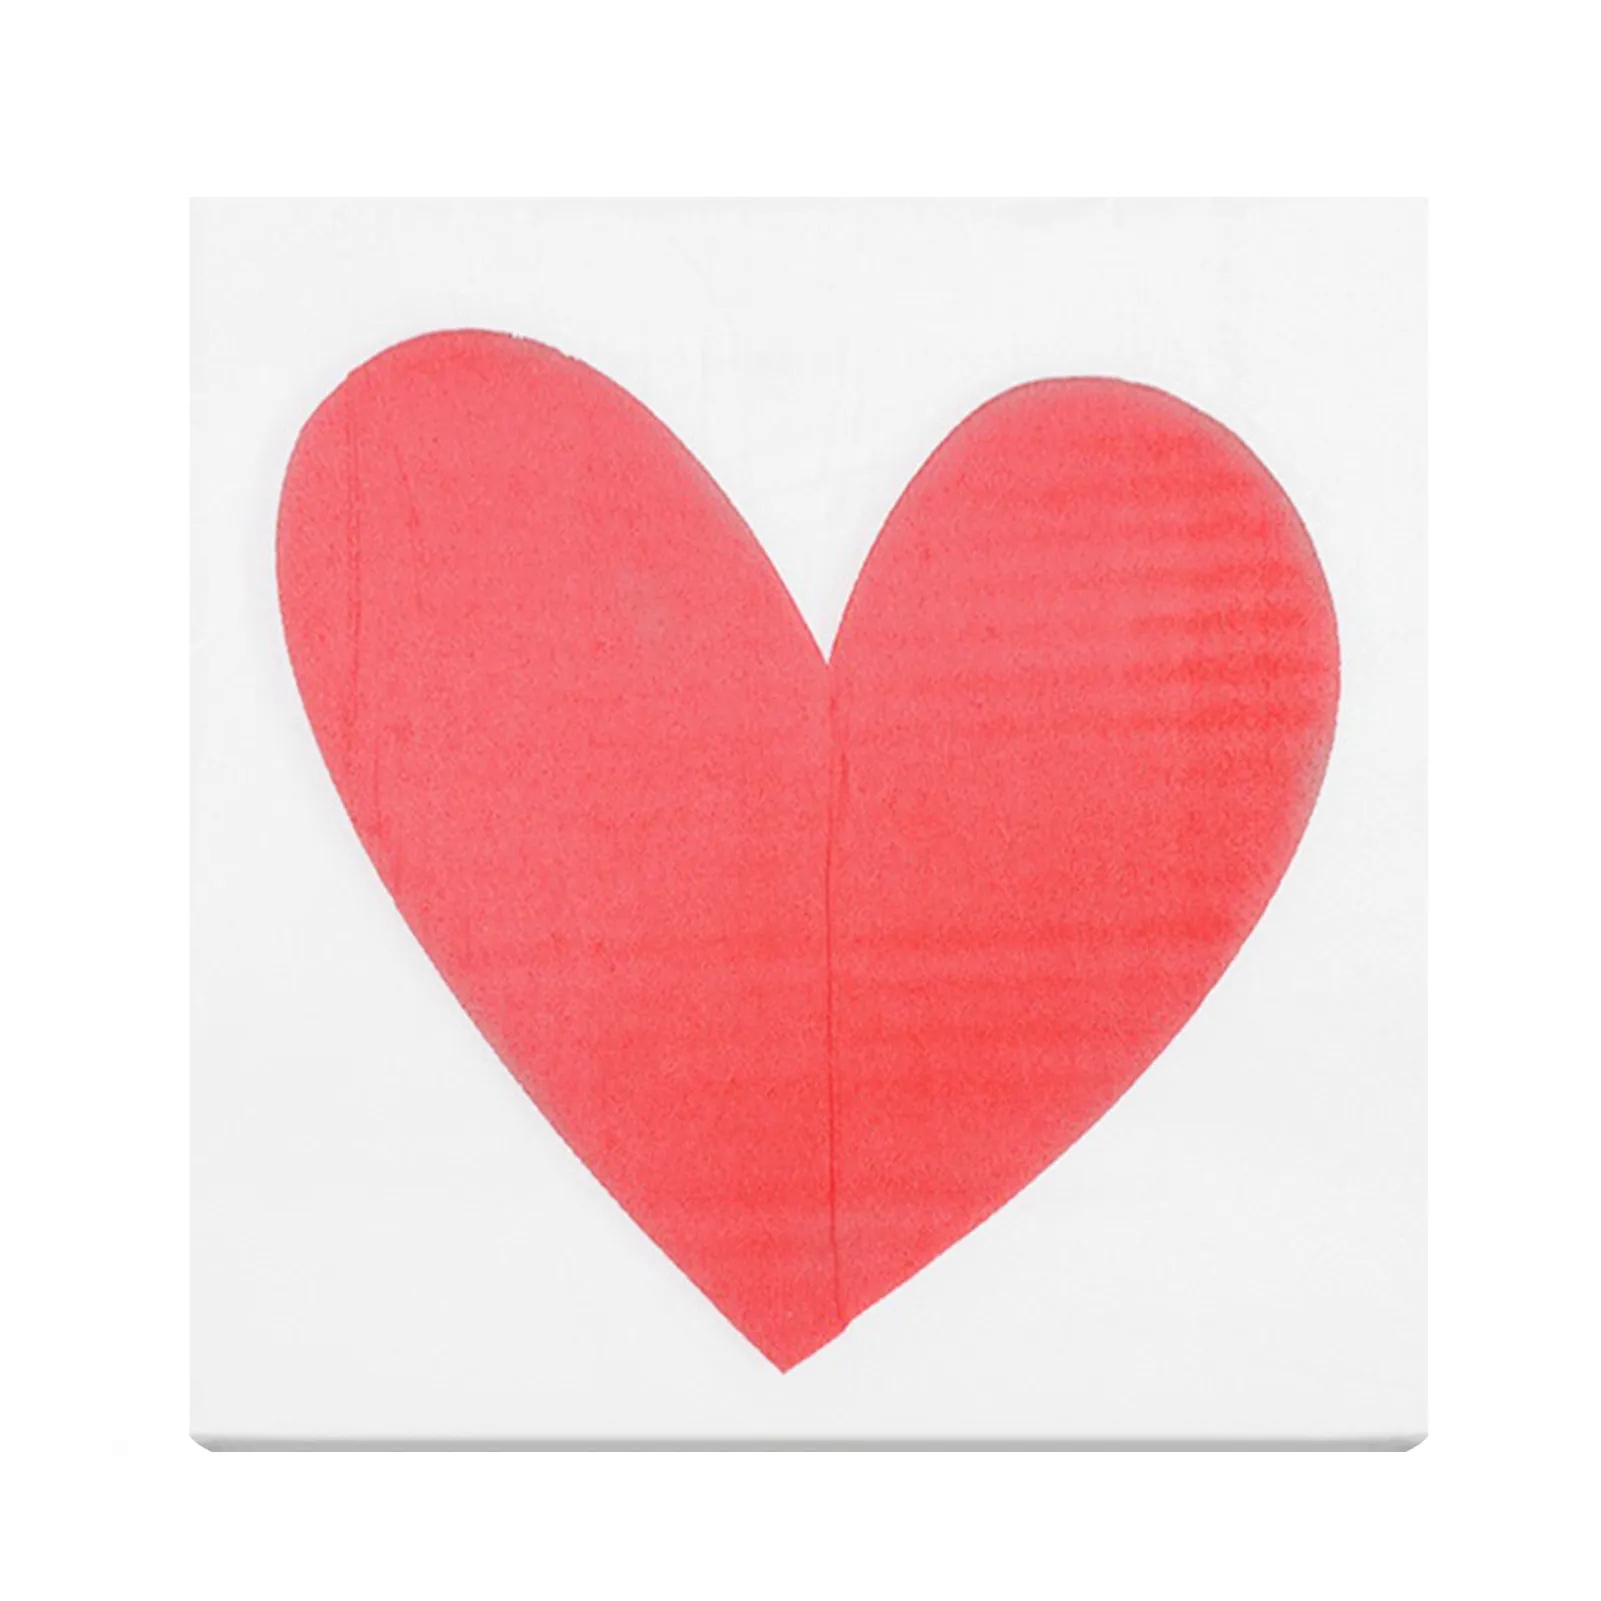 

Декоративные бумажные салфетки, бумажная салфетка с рисунком сердца, 2-слойная мягкая бумажная салфетка с рисунком сердца для ужина